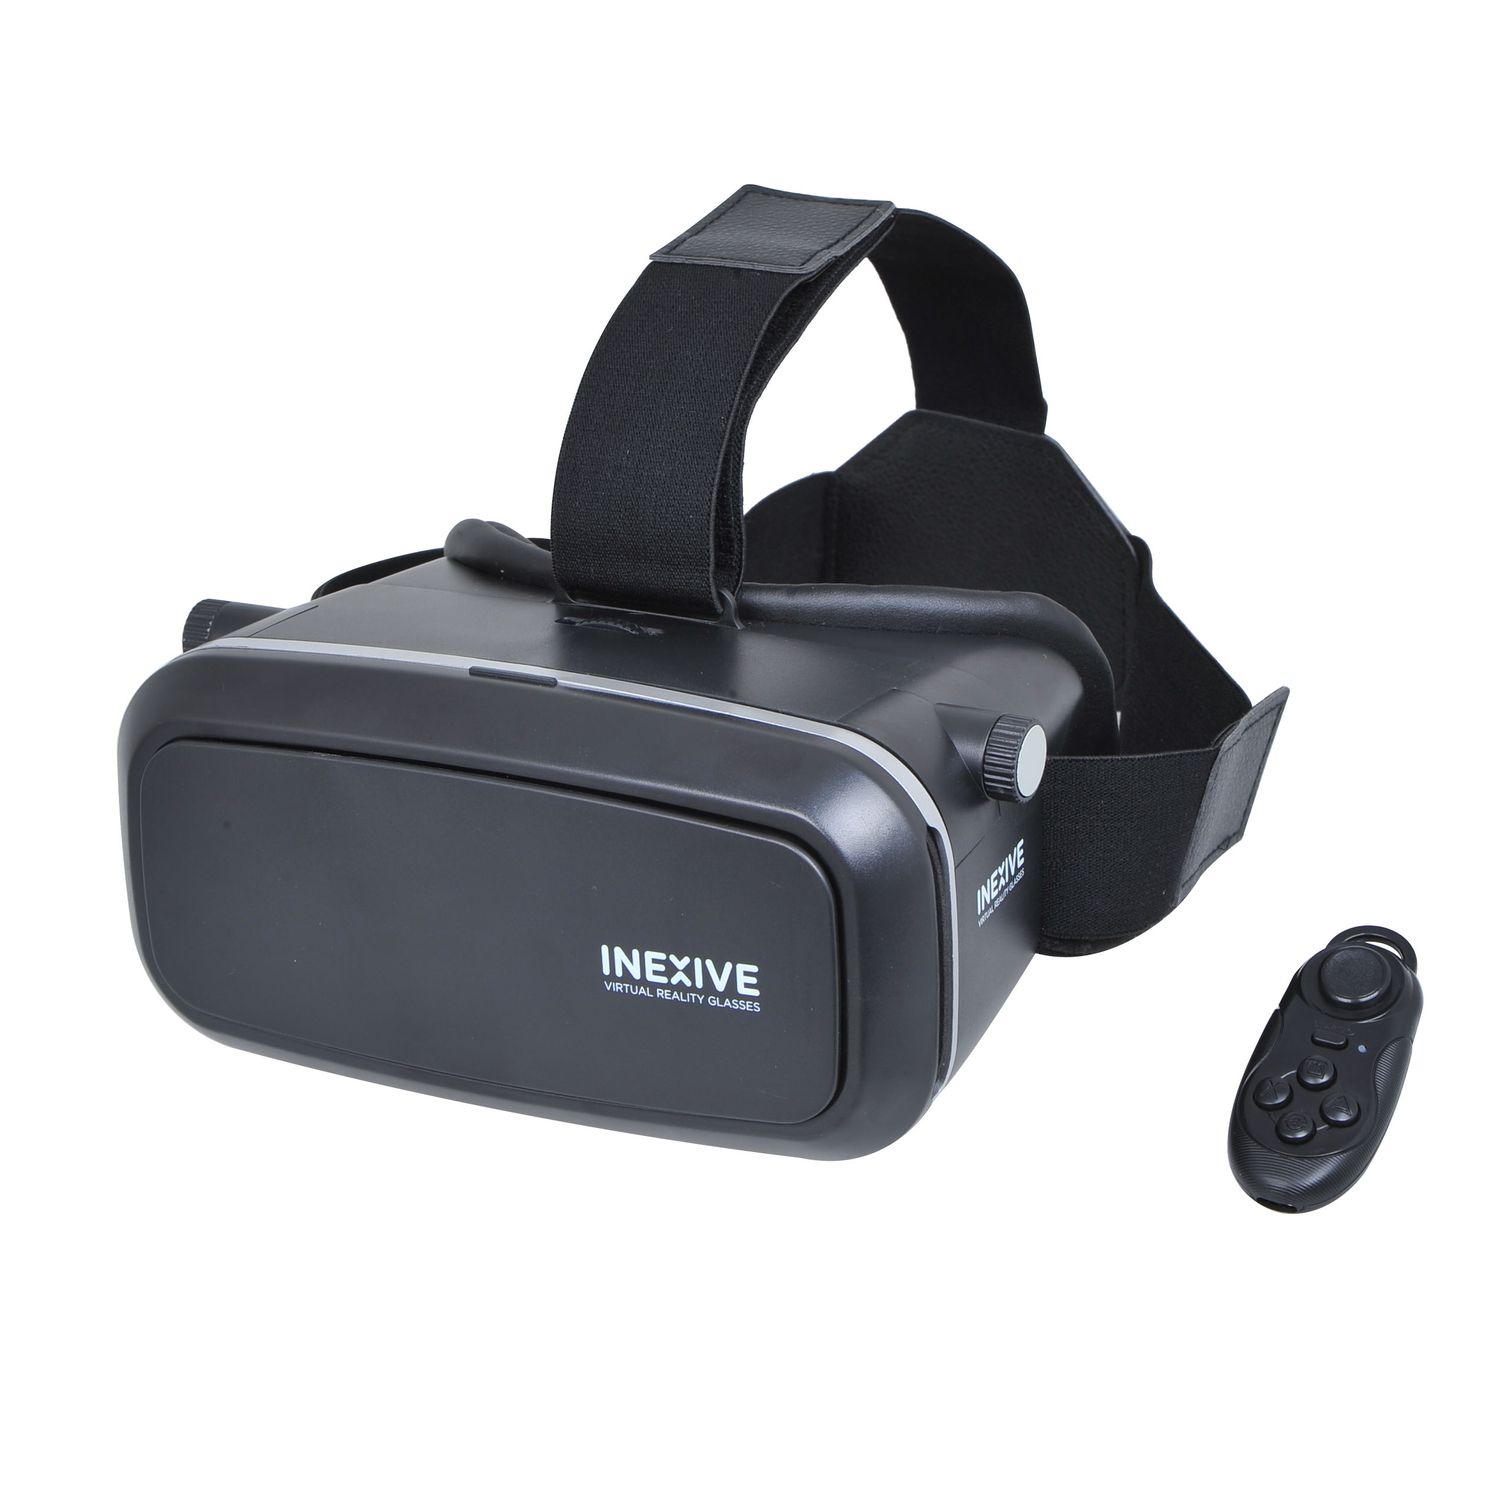 INEXIVE HD VR - Noir - Casque réalité virtuelle pas cher 